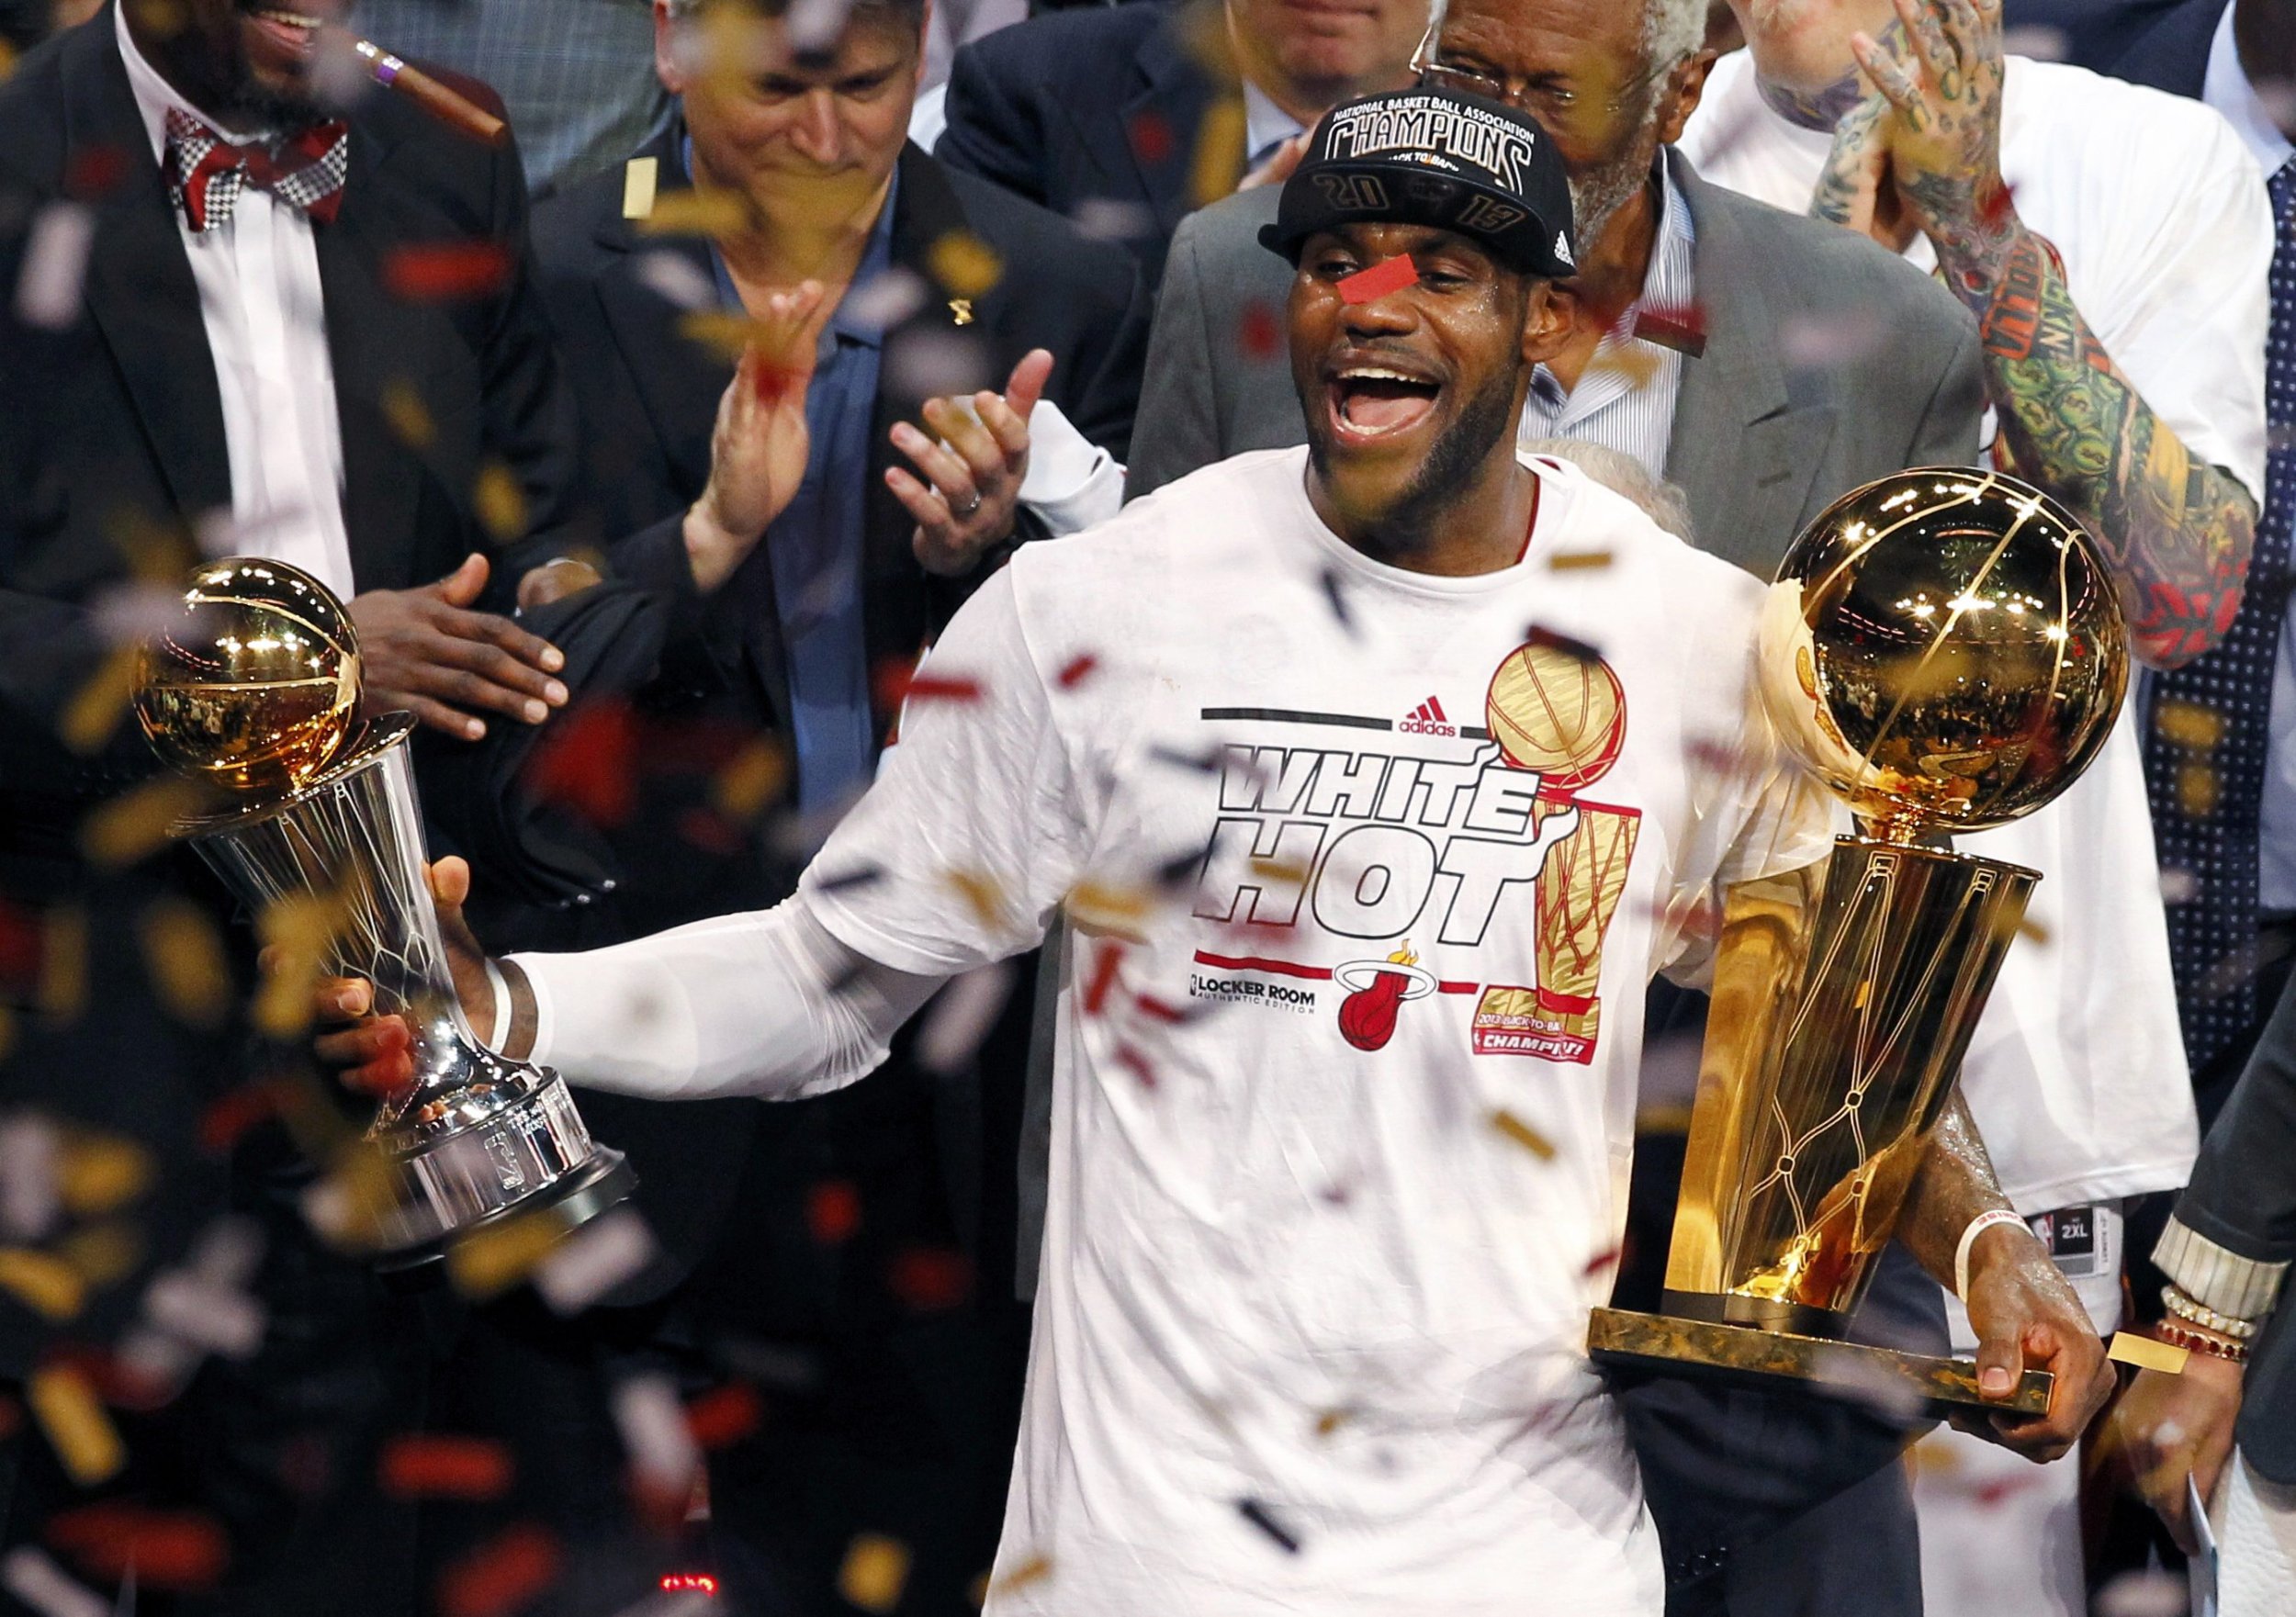 VIDEO Heat - Spurs Game 7 Highlights 2013 NBA Finals: LeBron James 